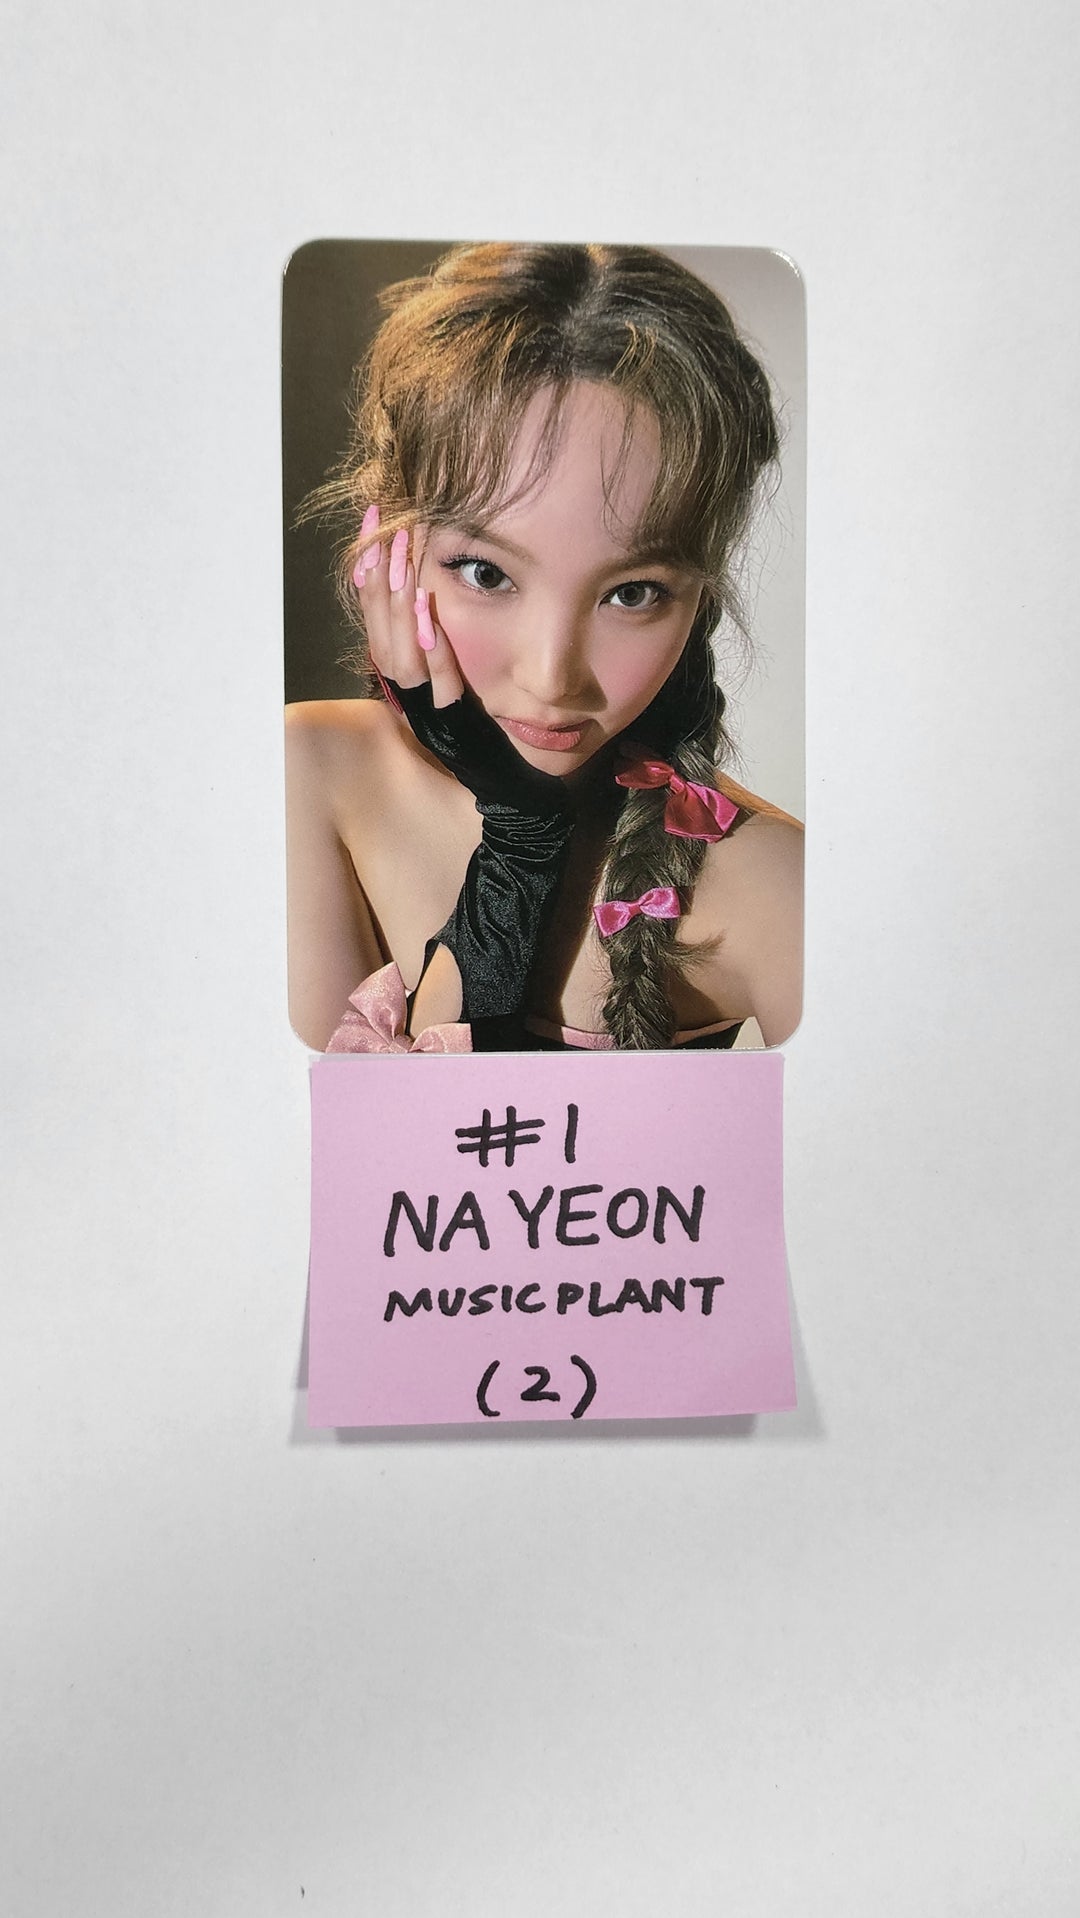 ナヨン「IM NAYEON」 - Music Plant 抽選イベントフォトカード、2カット写真